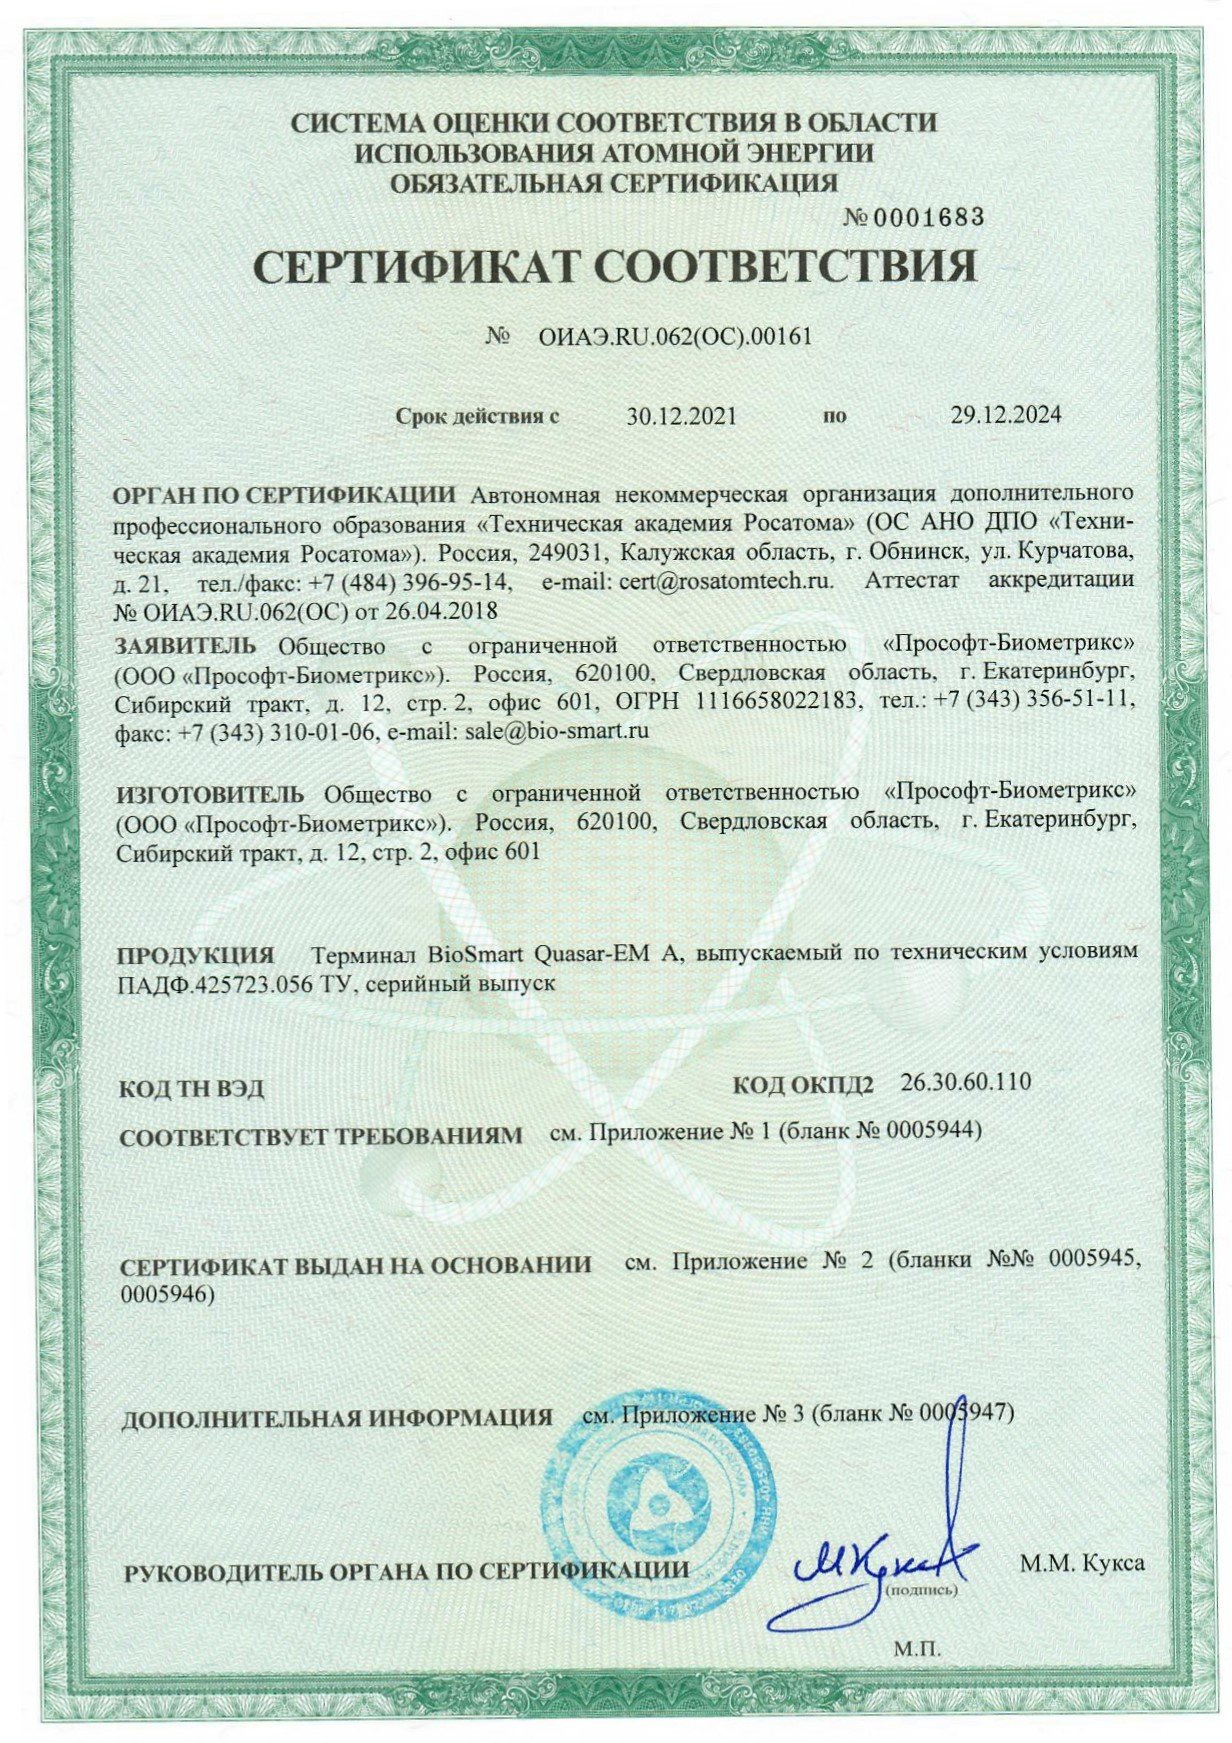 BIOSMART получил сертификат соответствия своей продукции от 